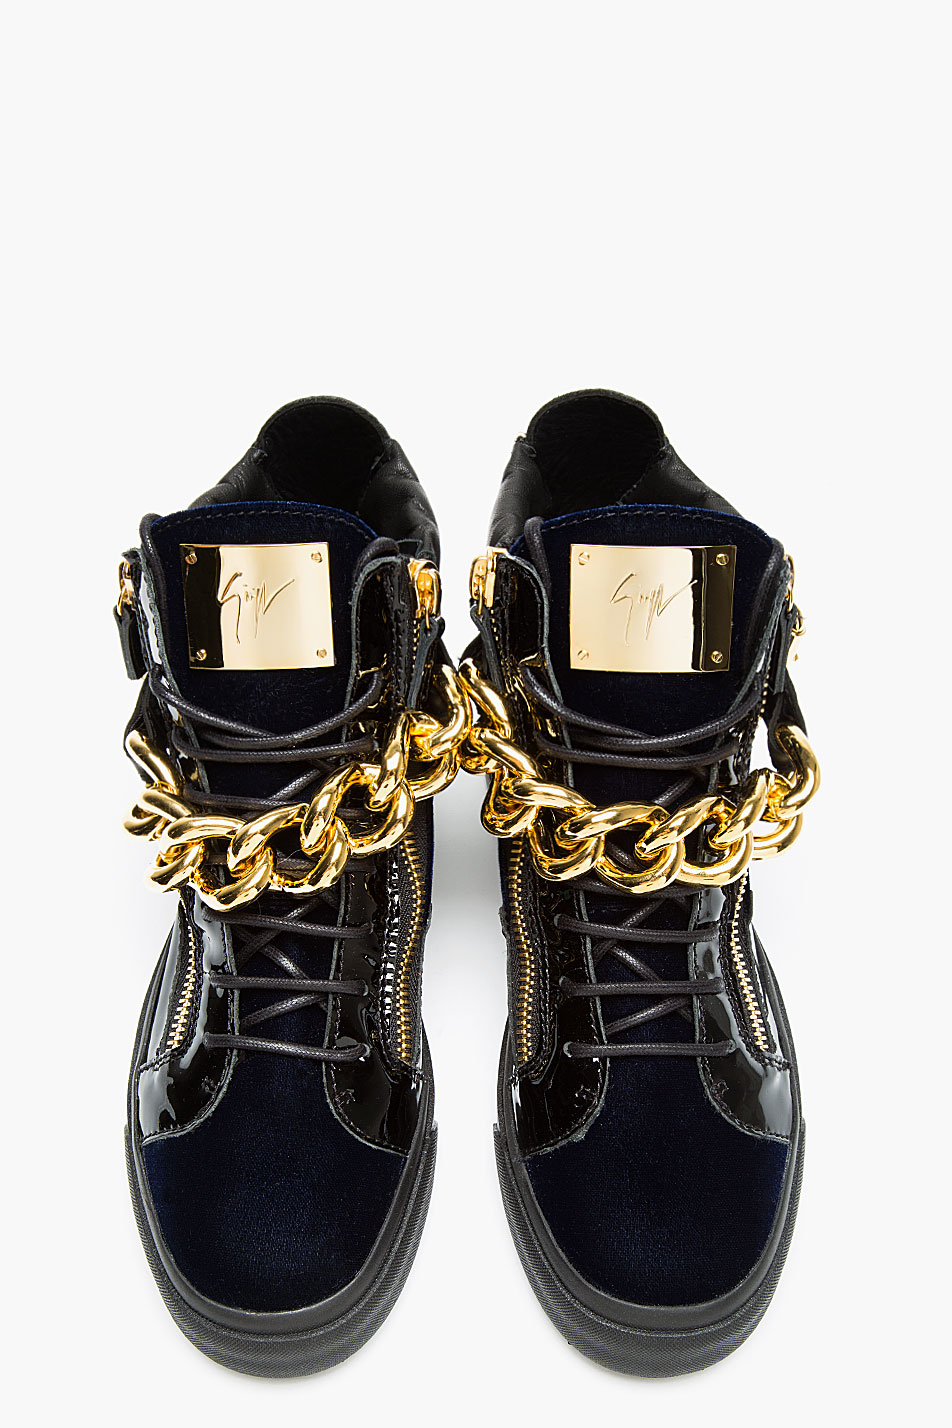 Lyst - Giuseppe zanotti Navy Velvet Gold Chain High_top Sneakers in ...